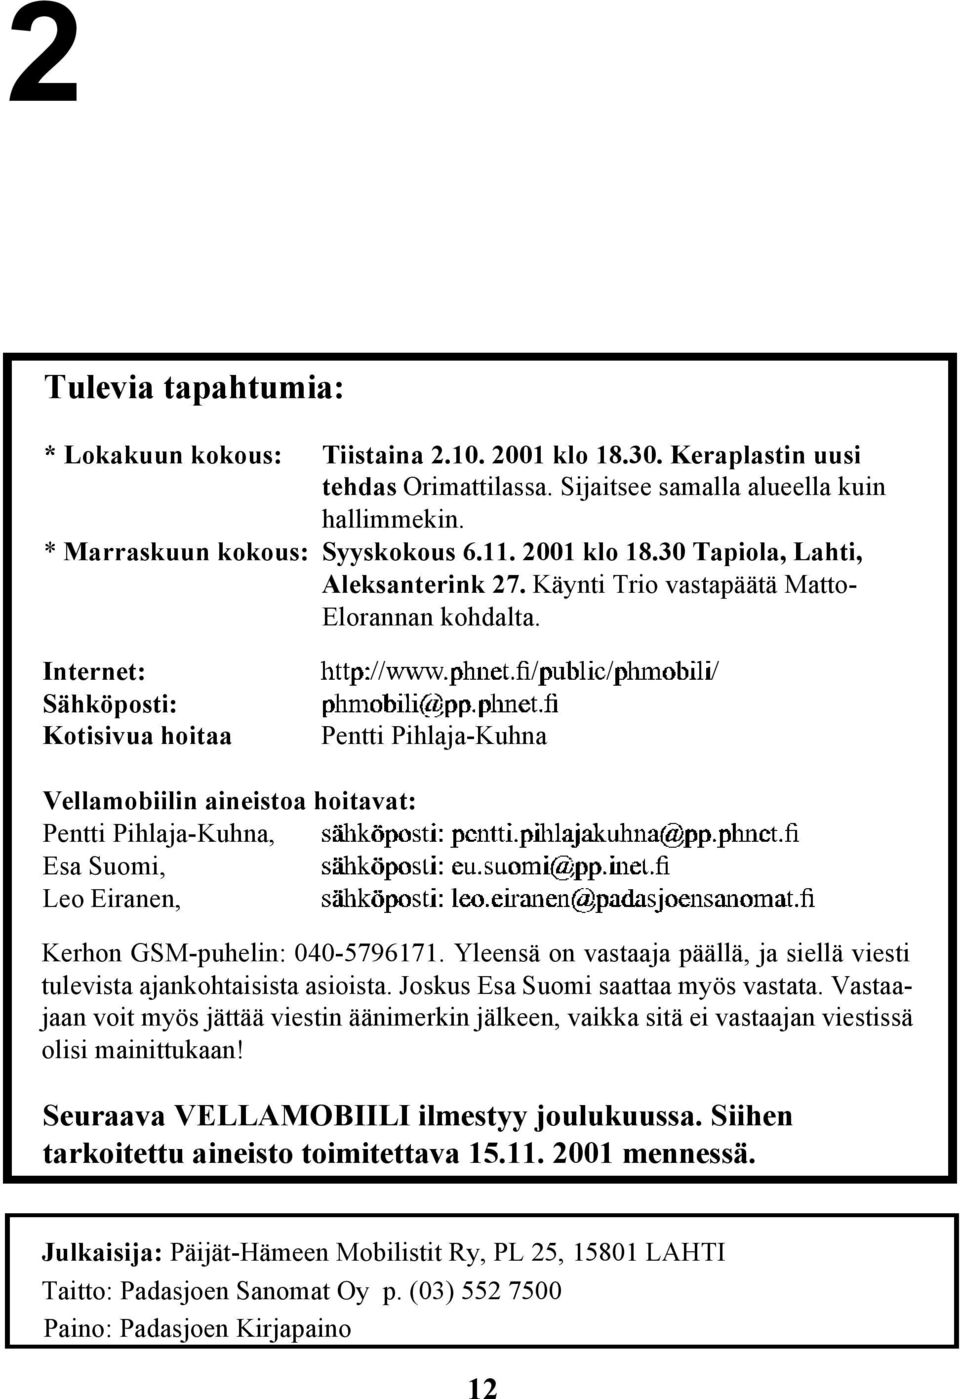 Internet: Sähköposti: Kotisivua hoitaa Pentti Pihlaja-Kuhna Vellamobiilin aineistoa hoitavat: Pentti Pihlaja-Kuhna, Esa Suomi, Leo Eiranen, Kerhon GSM-puhelin: 040-5796171.